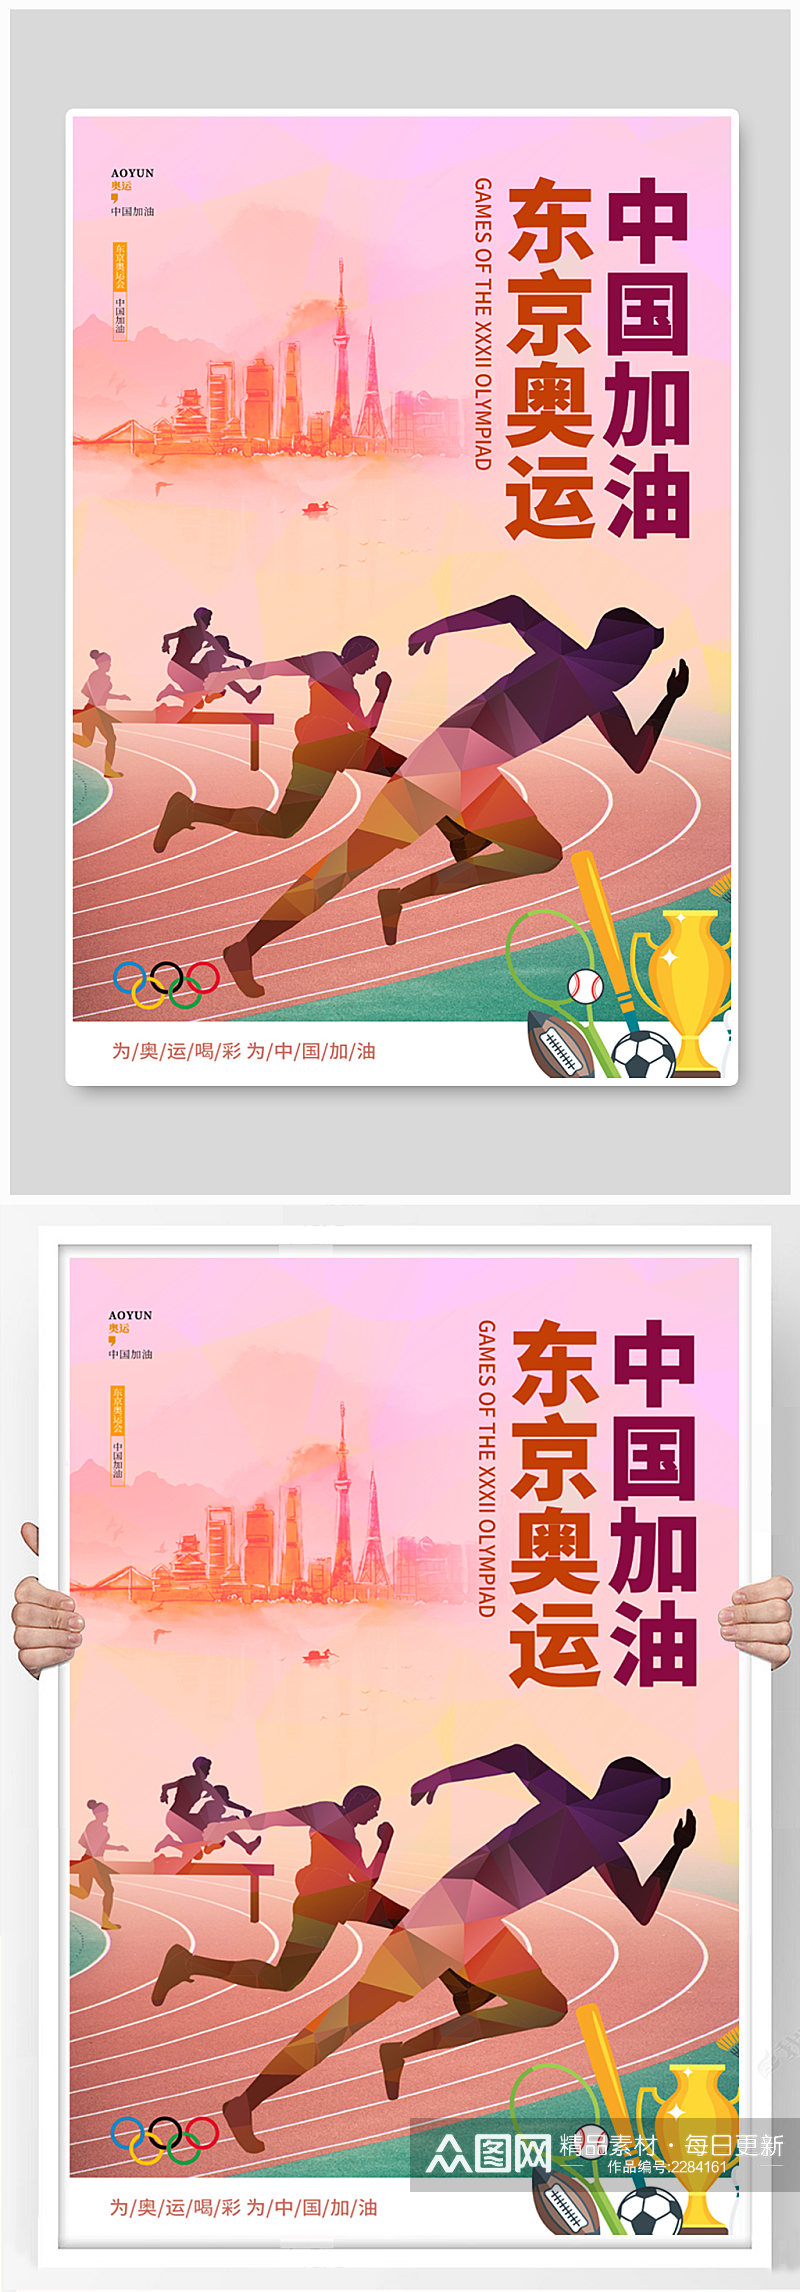 奥运会中国加油宣传海报素材